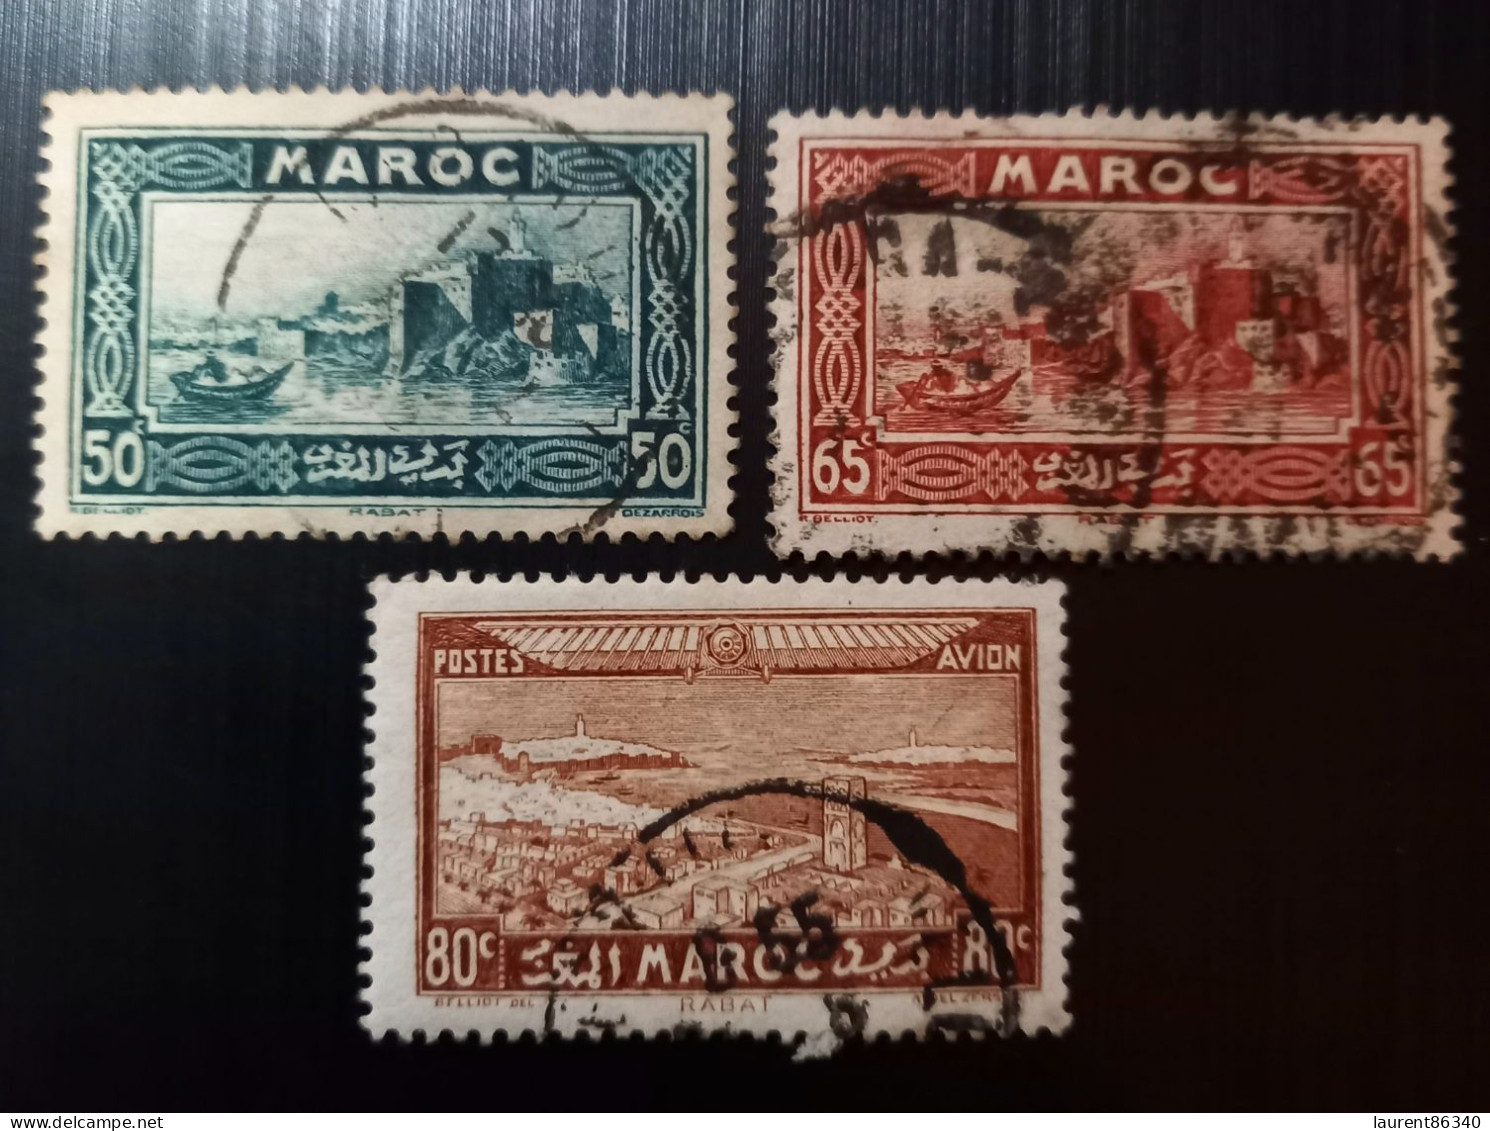 Maroc 1933 Local Motives & 1933 Airmail - Views Of The City  Modèle: R. Beliot Gravure: Del Rieu Lot 1 - Oblitérés